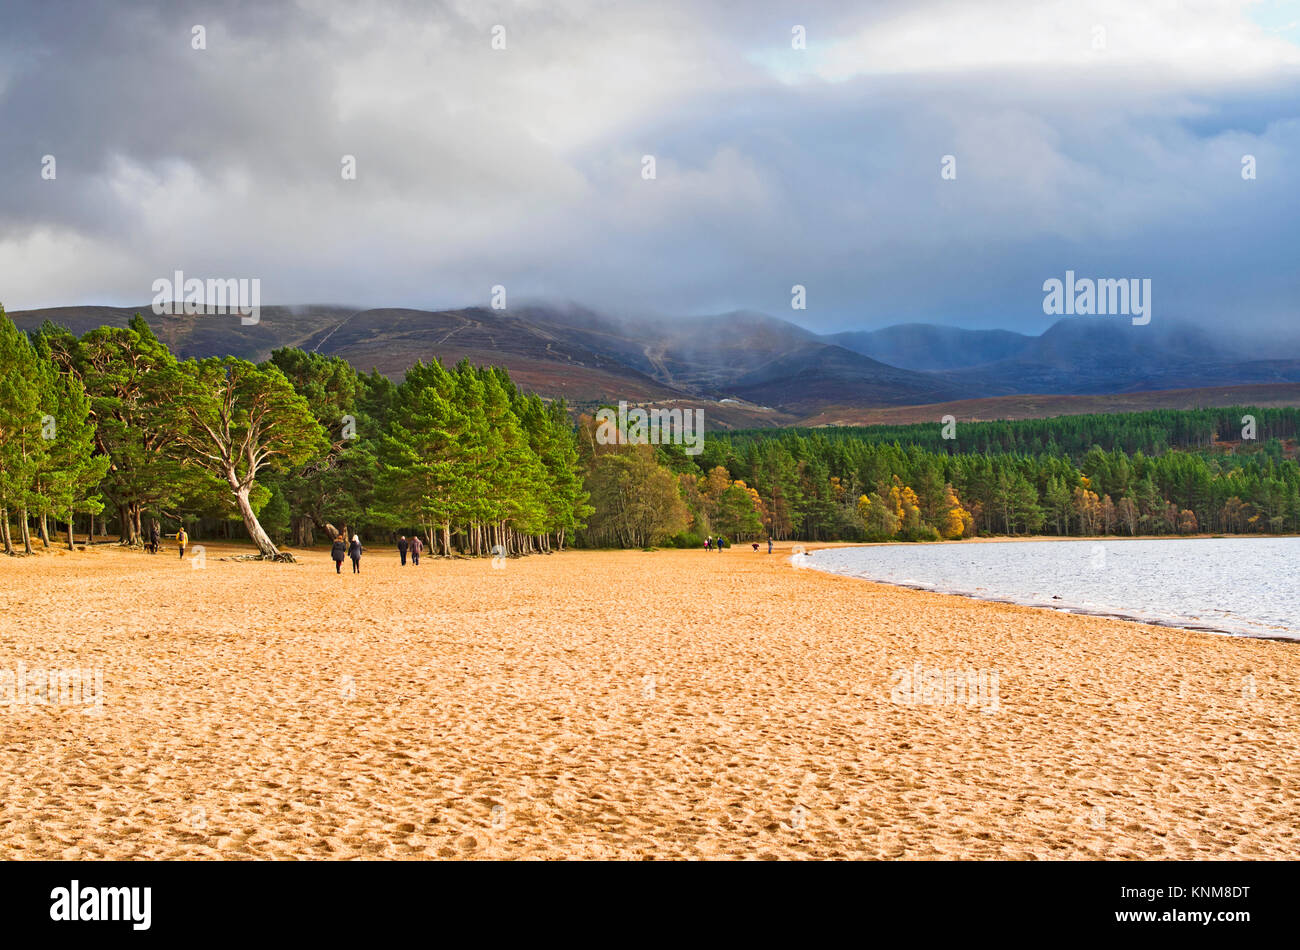 La gente camminare sulla spiaggia sabbiosa a Loch Morlich,Glenmore, Highlands scozzesi, blustery luminosa giornata autunnale, il misty Cairngorm altopiano sorge dietro. Foto Stock